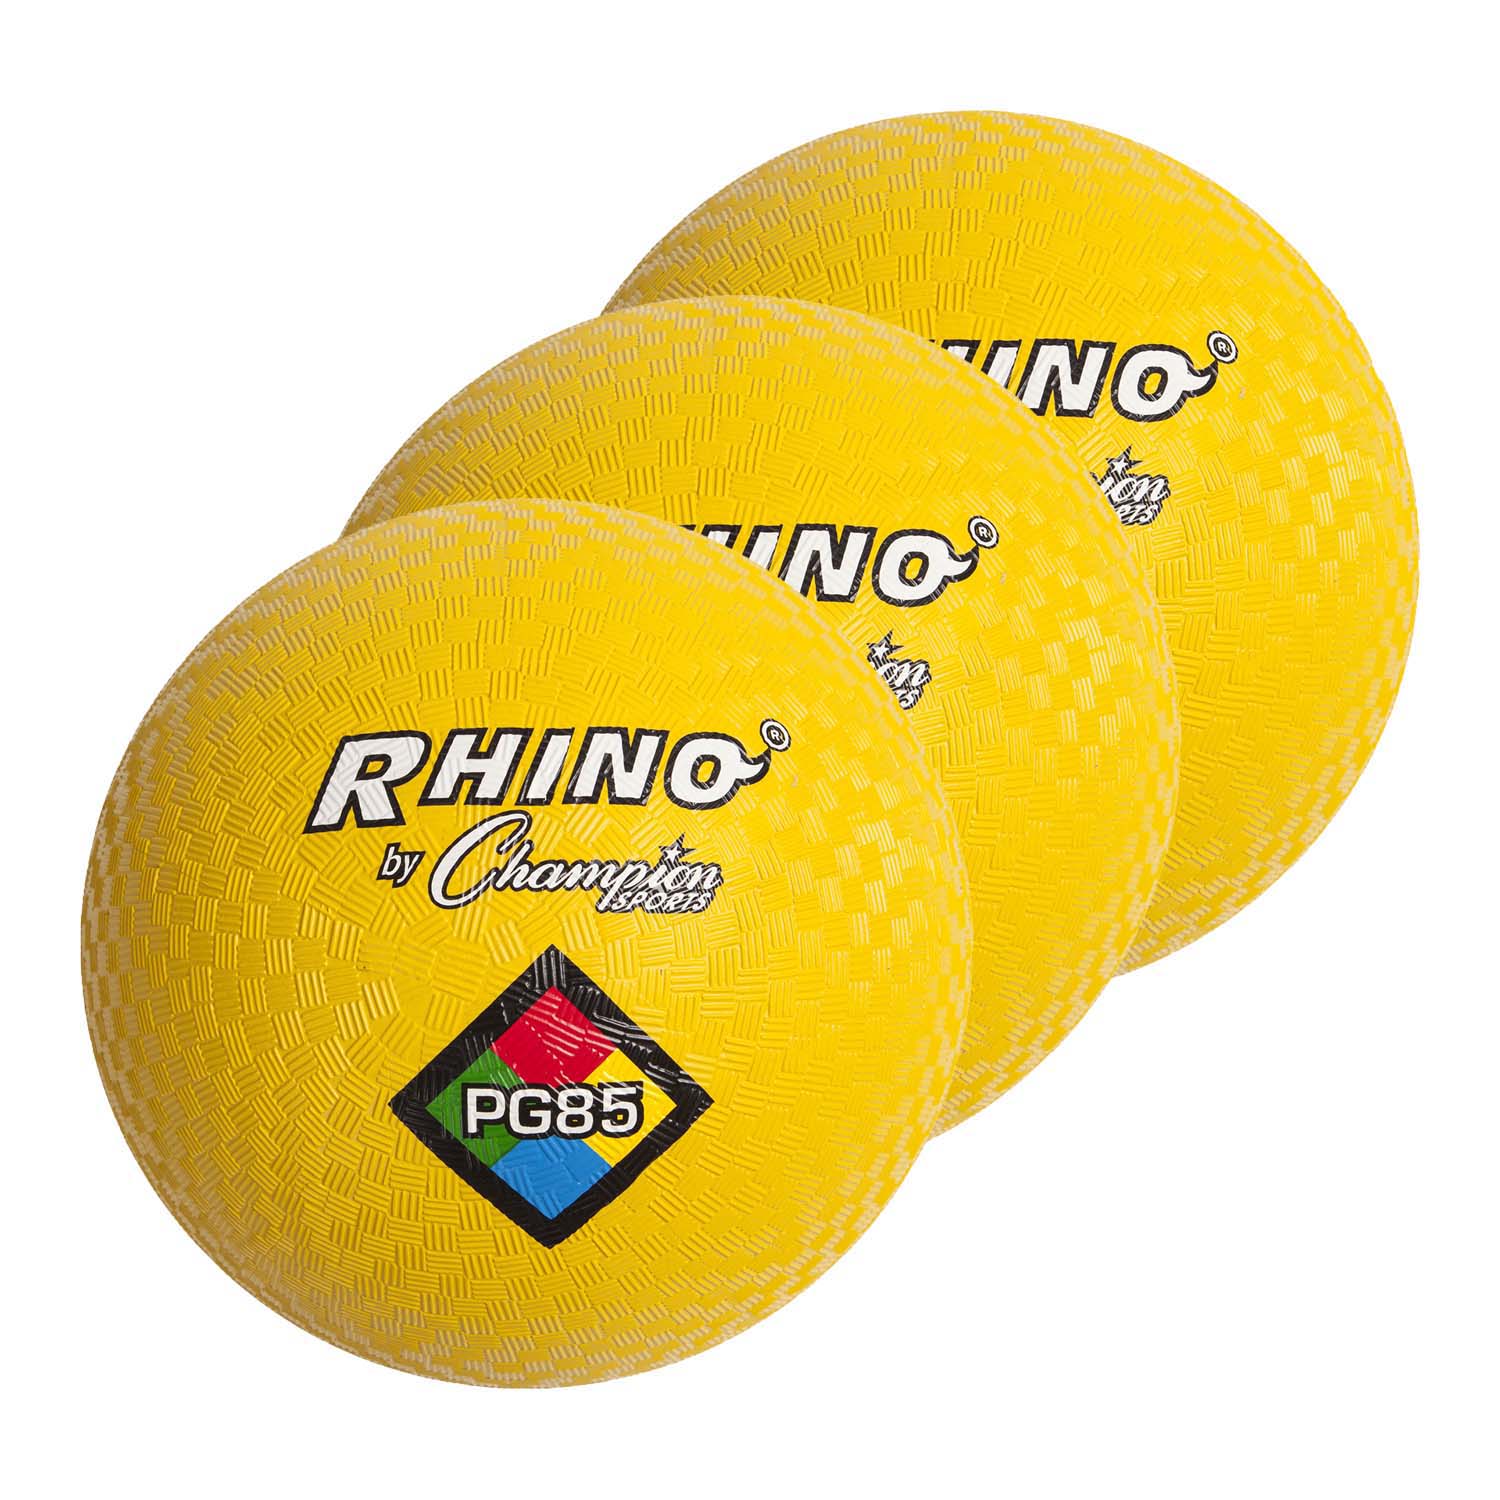 Playground Ball, 8-1/2", Yellow, Pack of 3